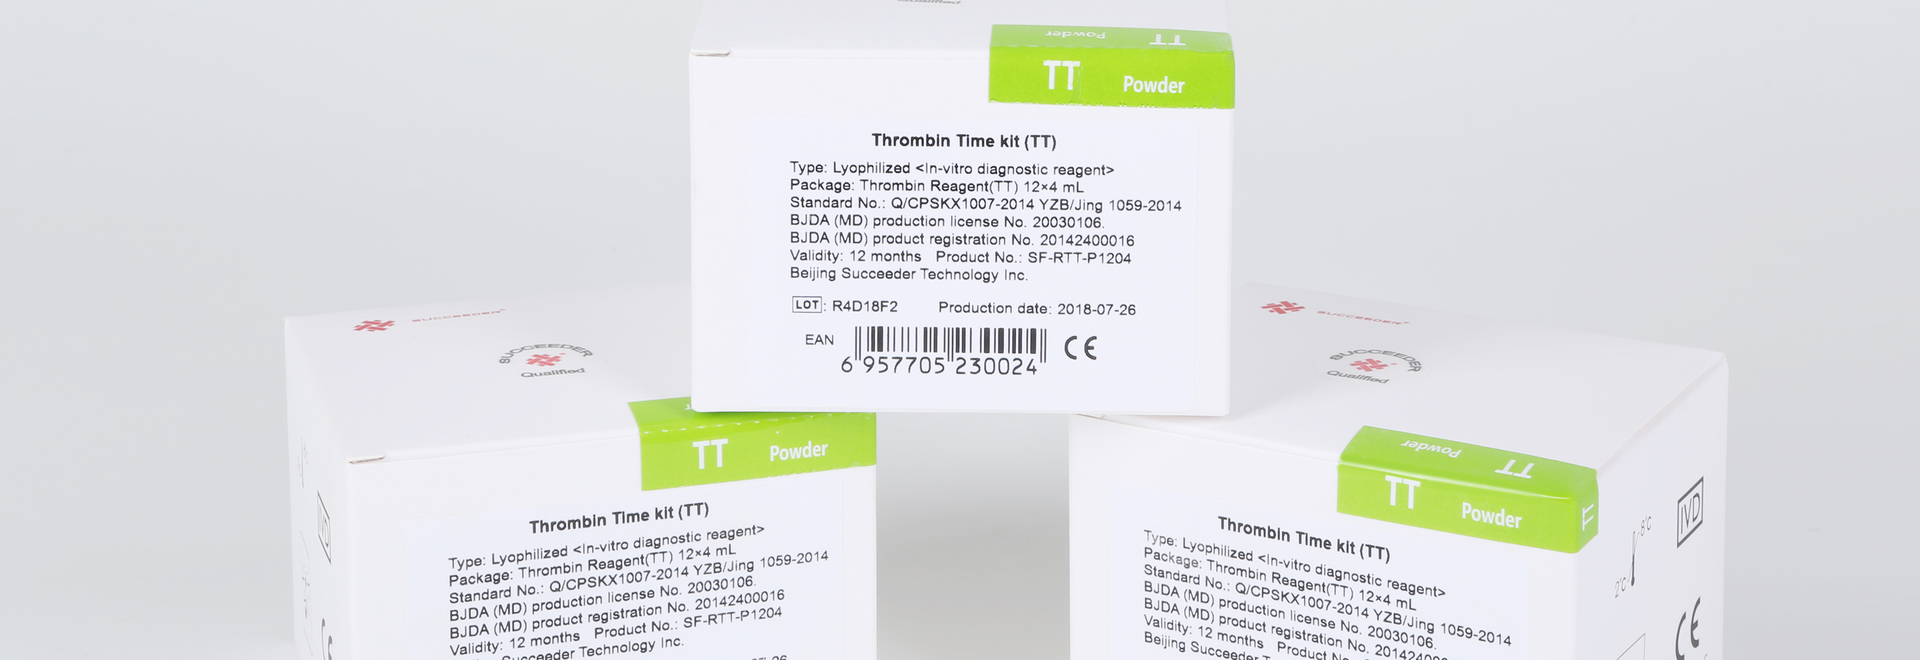 Thrombin Time Kit (TT) Featured Image